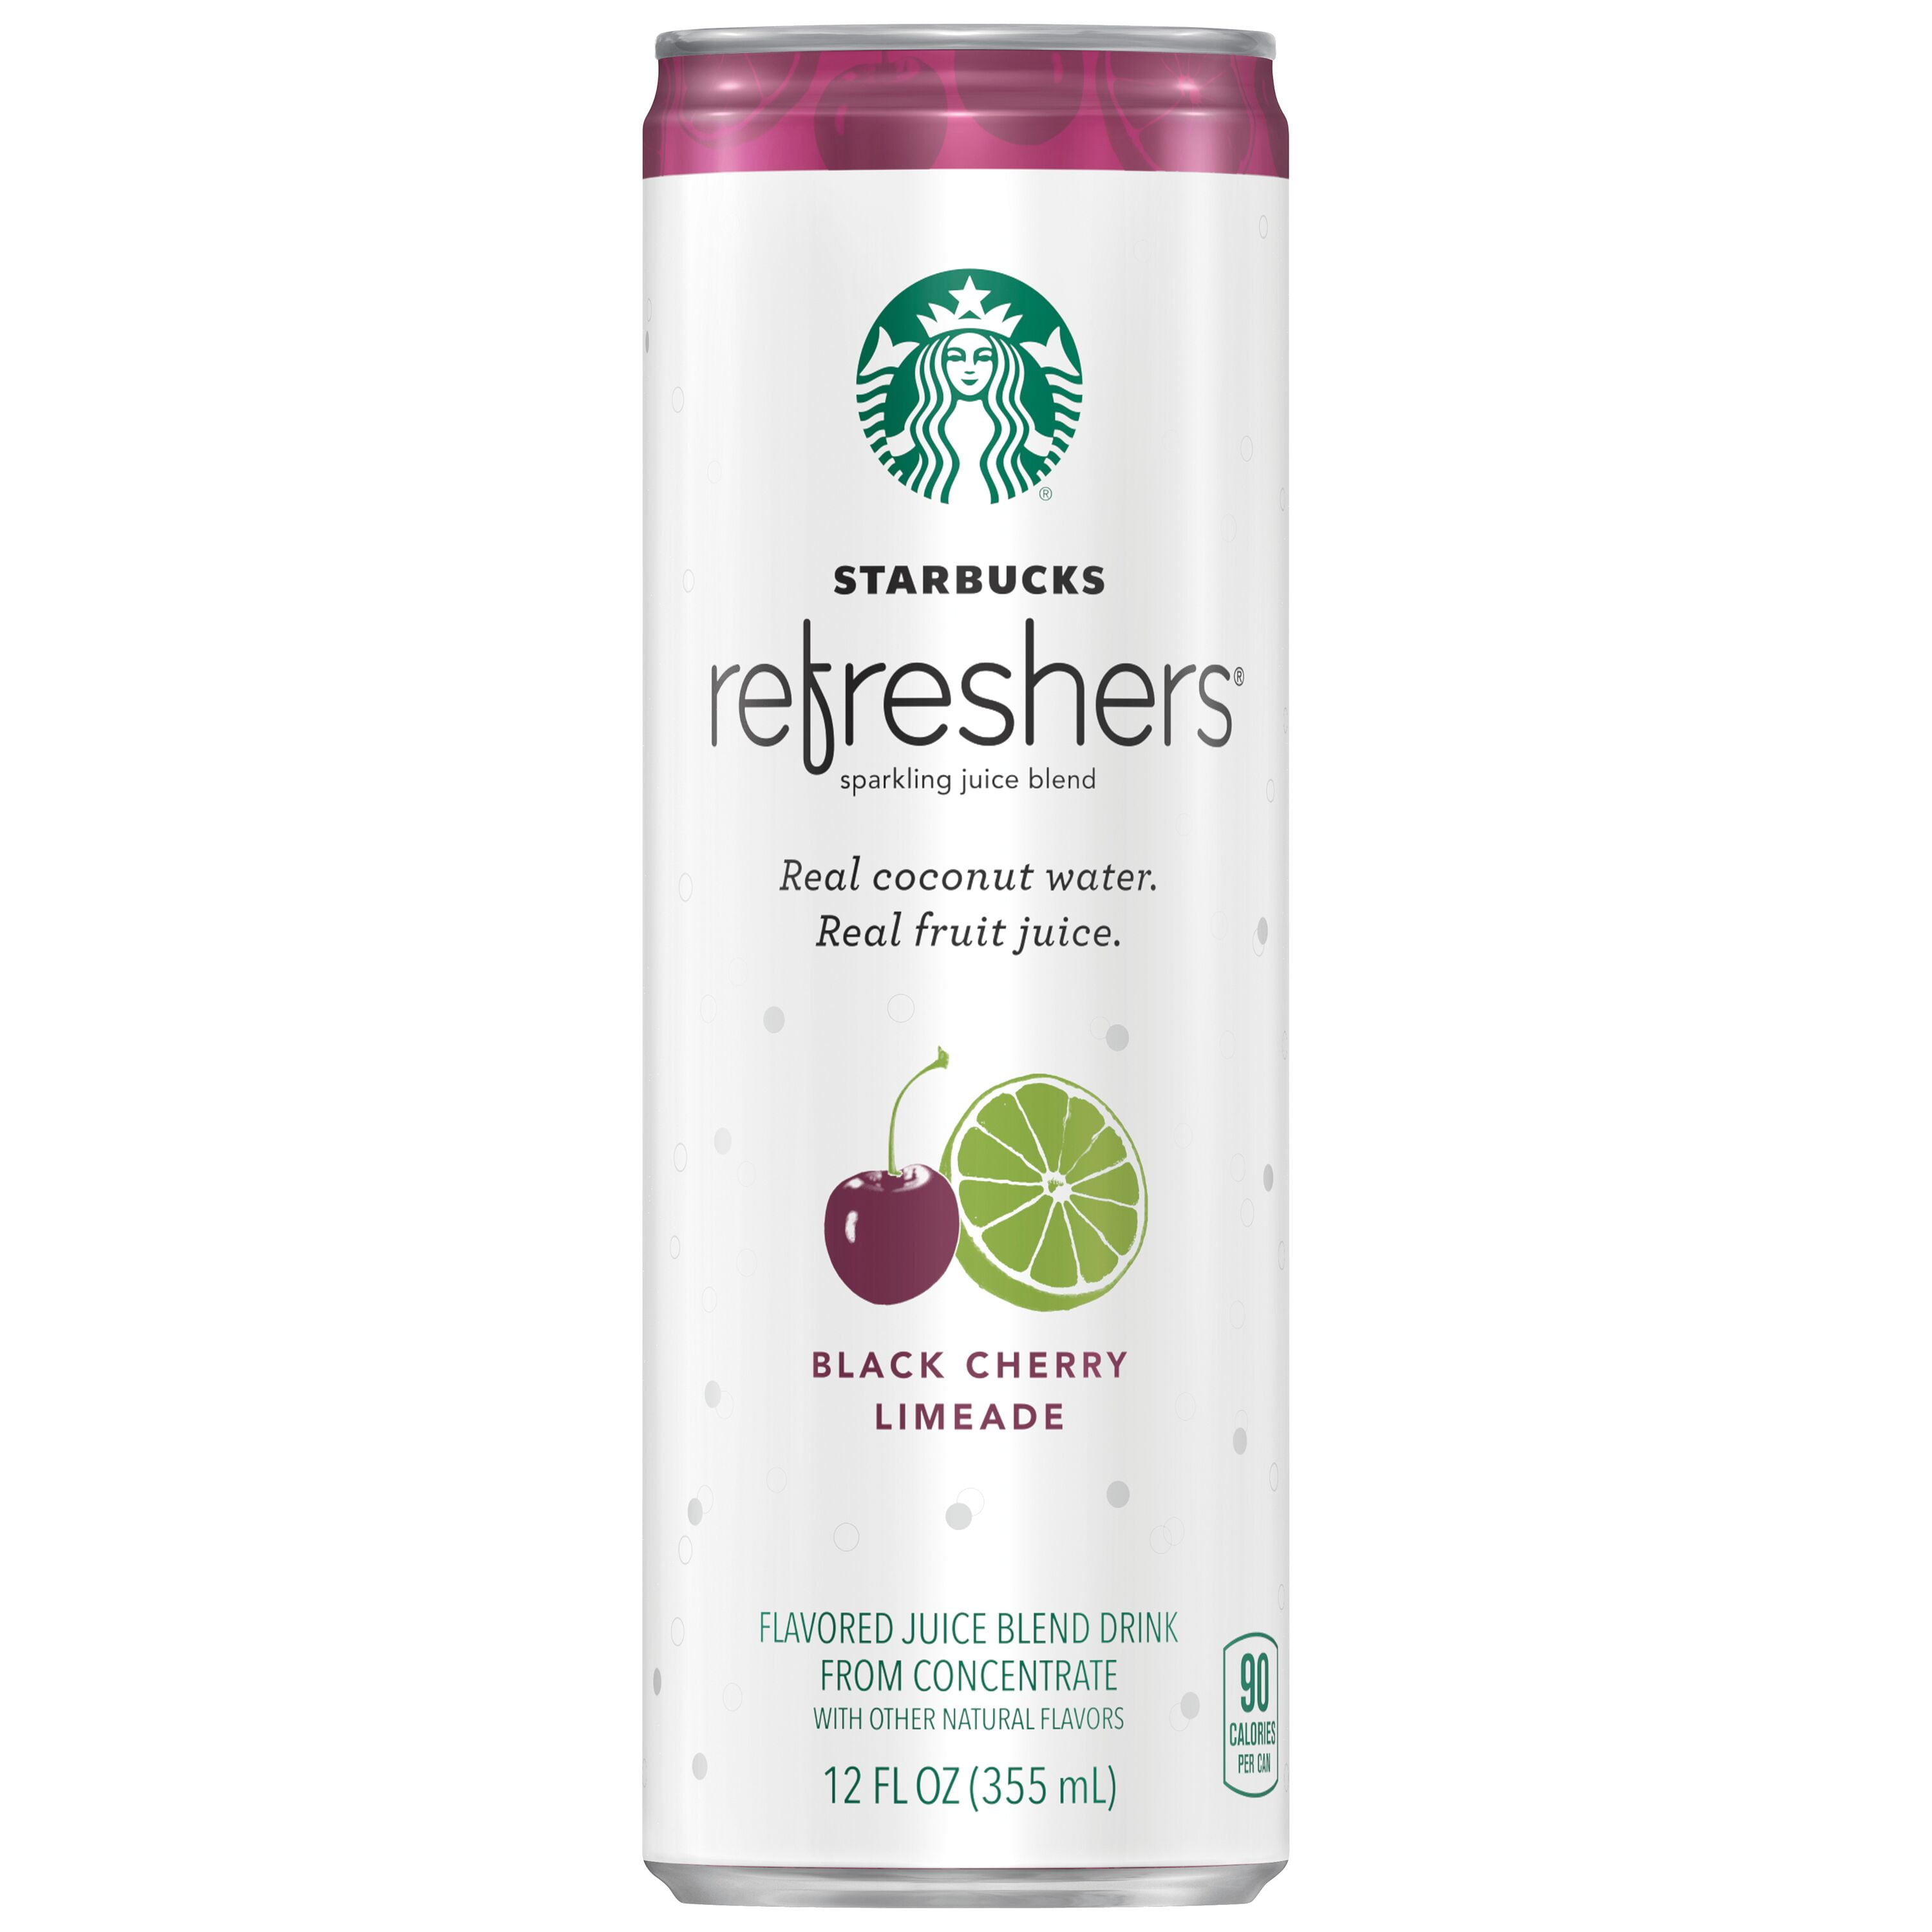 Starbucks refresher’s shaker for sale online 